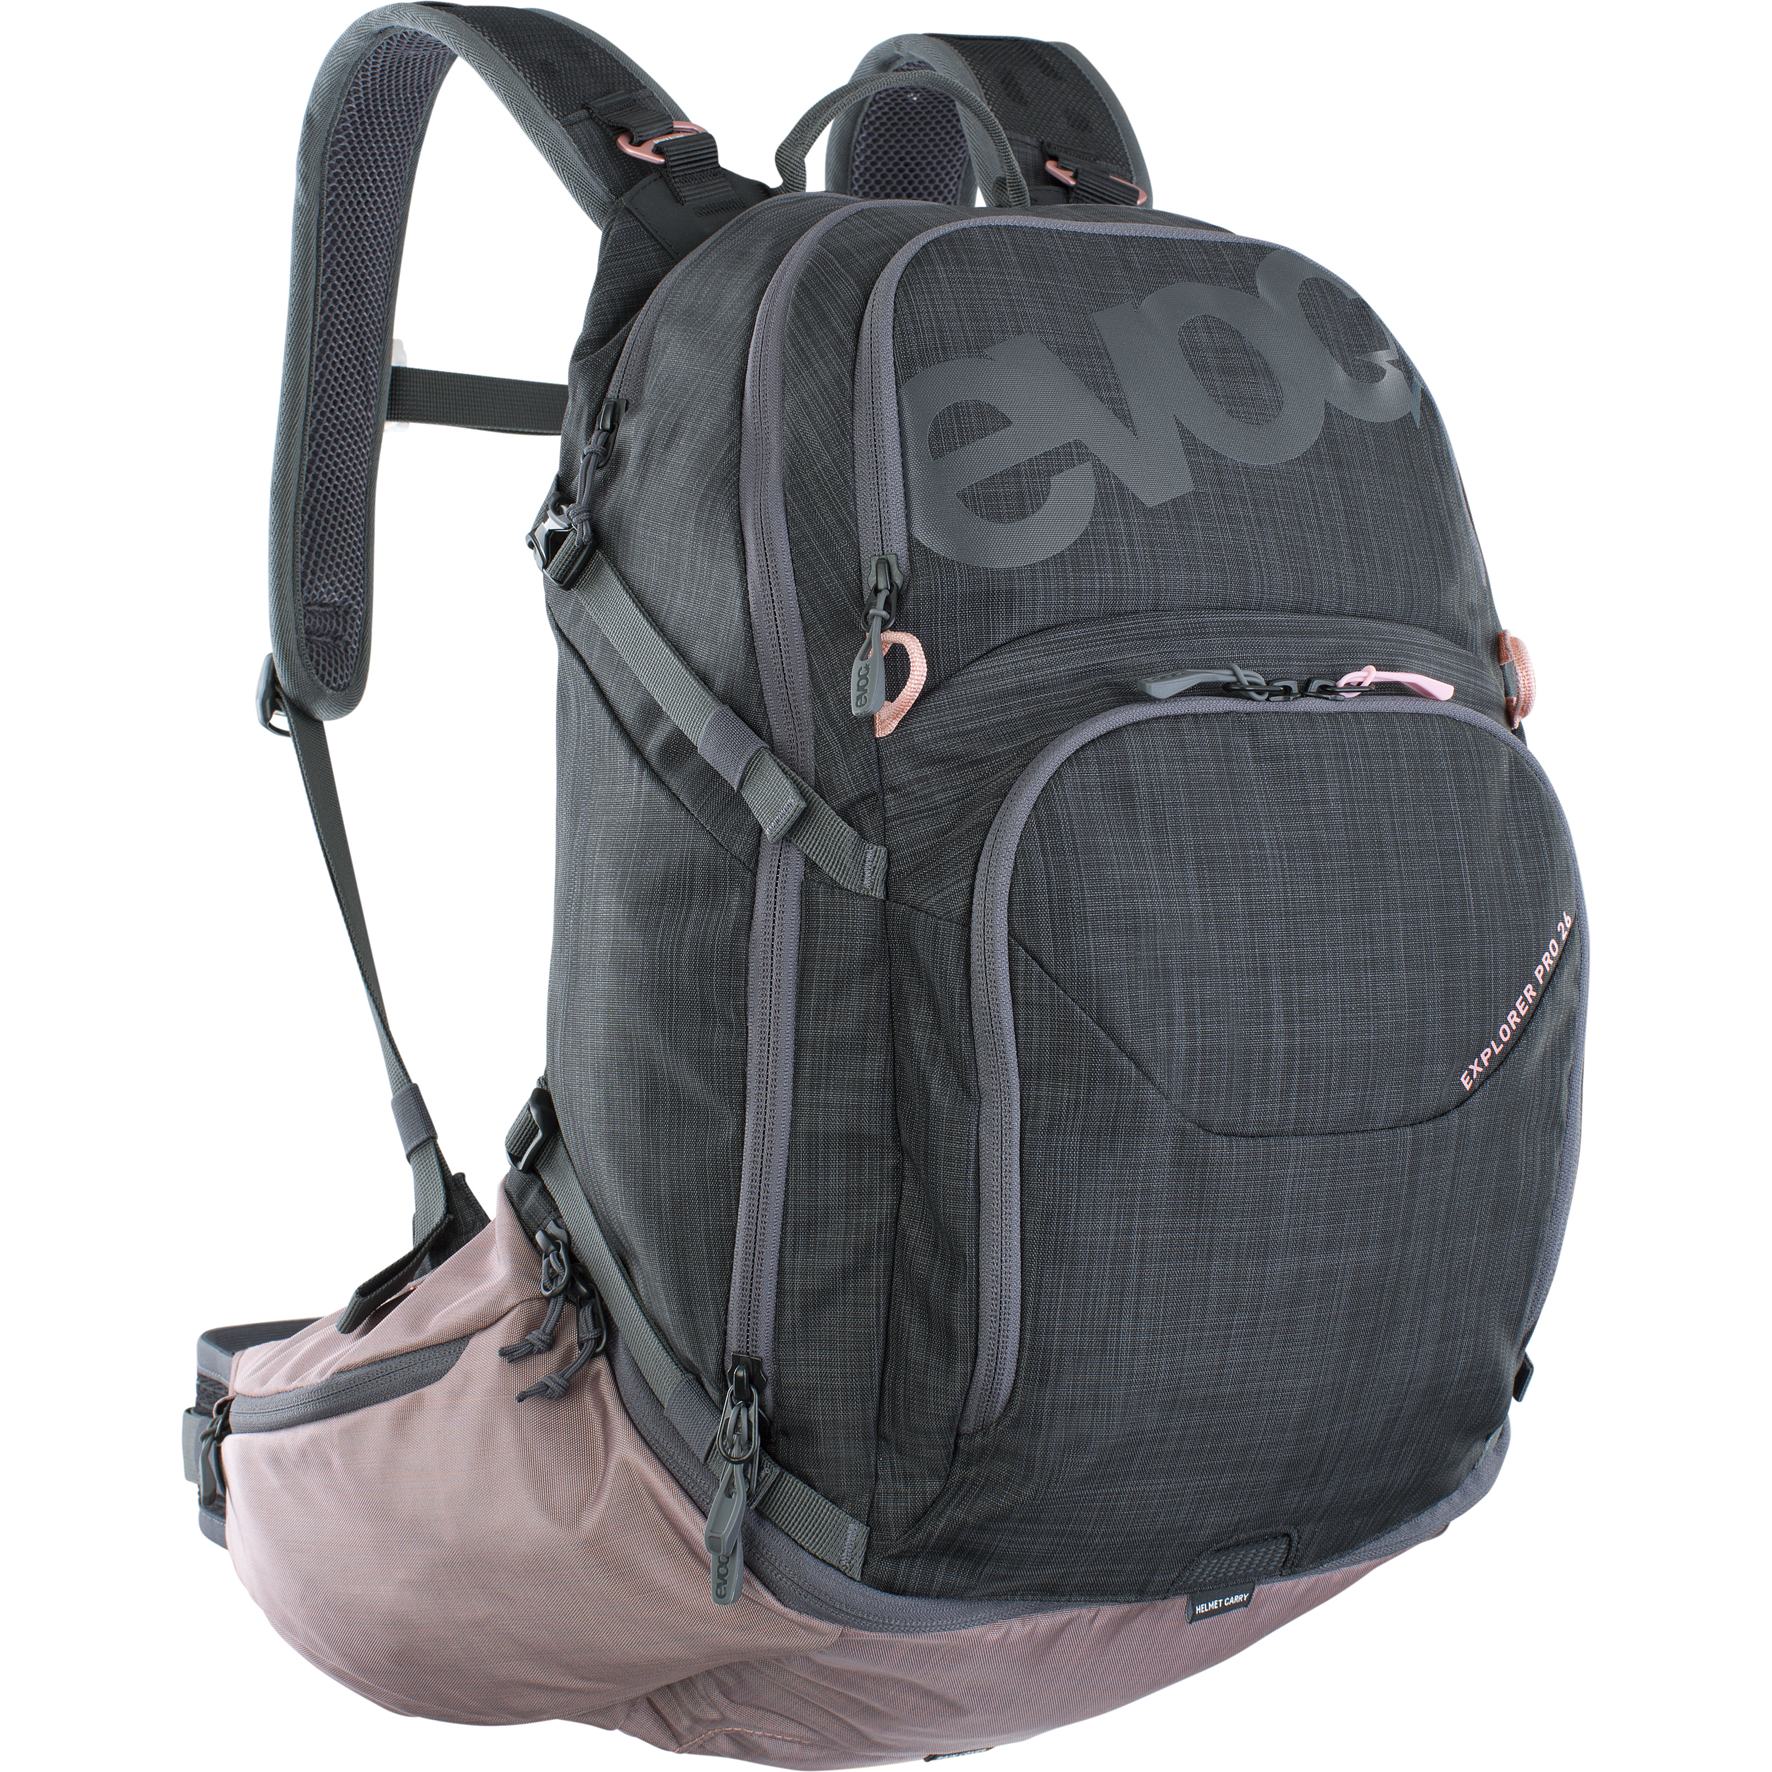 Image of EVOC Explorer Pro Backpack - 26 L - Carbon Grey / Dusty Pink